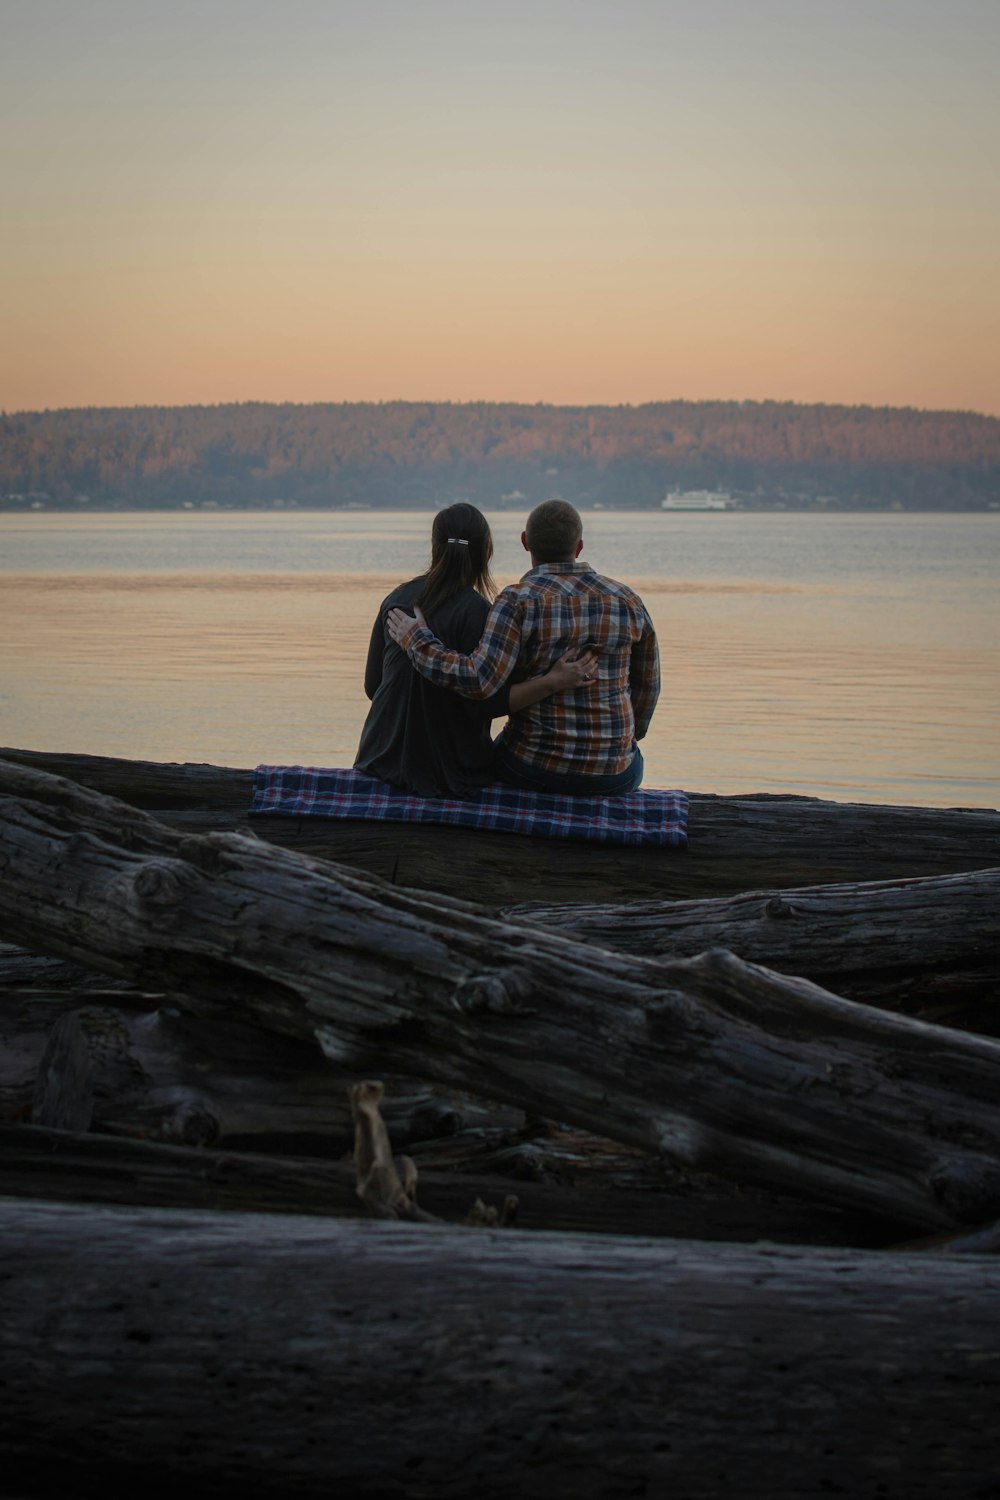 Zwei Personen, die auf einem Baumstamm sitzen und auf das Wasser schauen